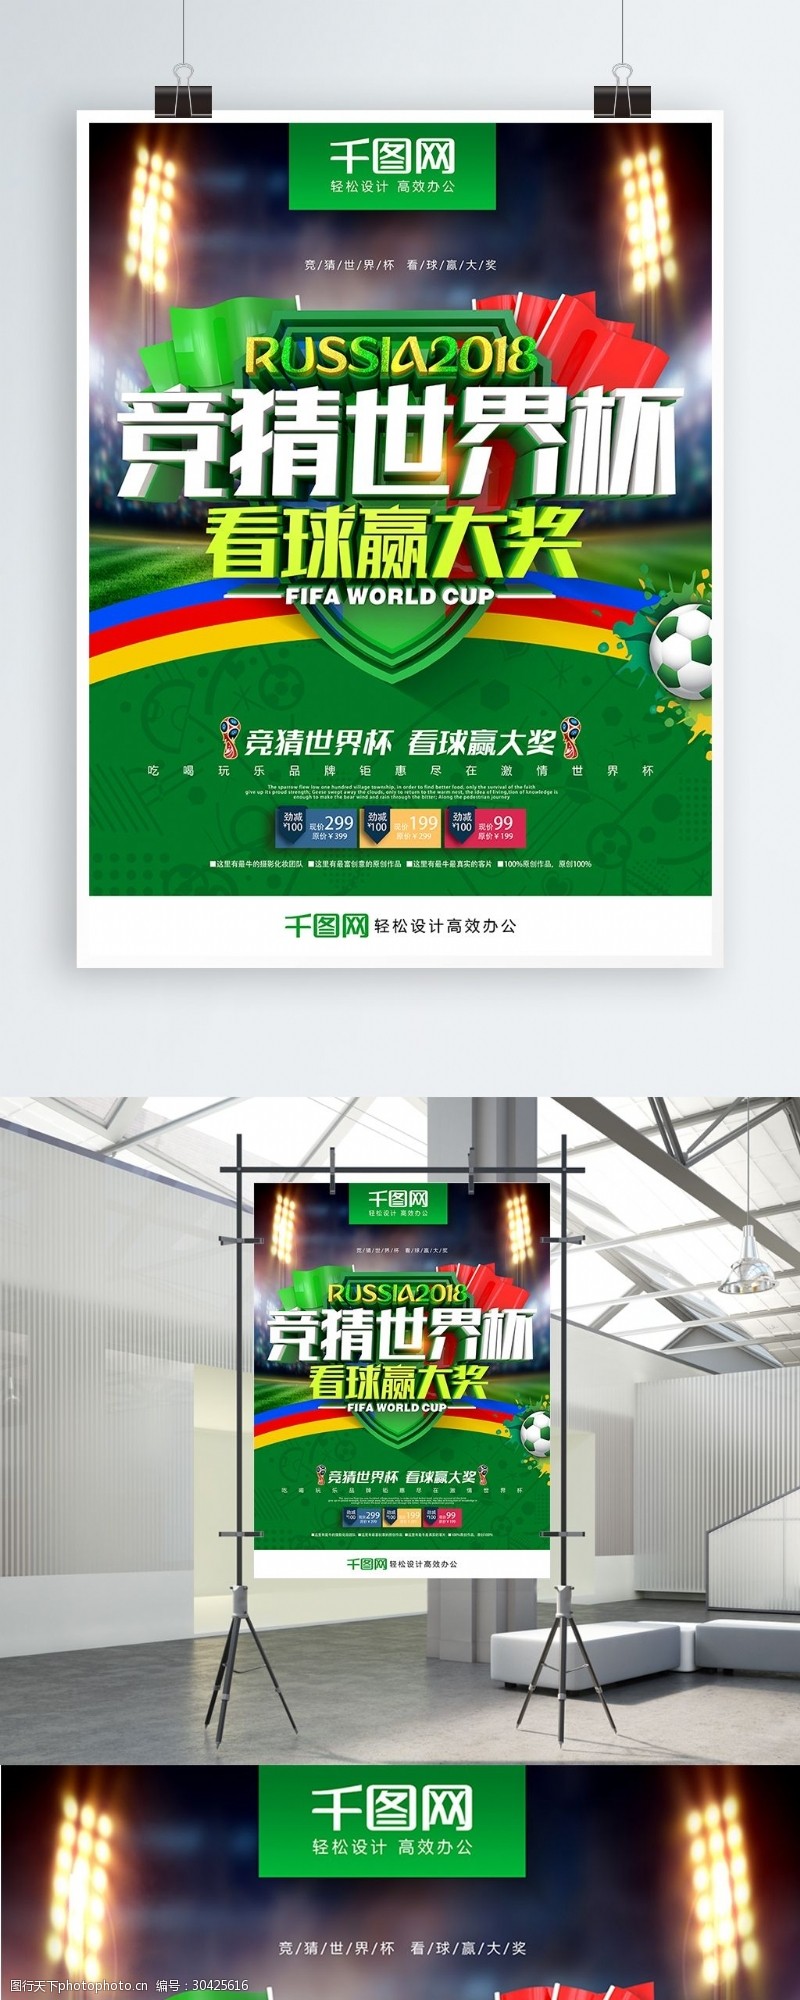 激情世界杯创意绿色清新时尚立体竞猜世界杯世界杯海报